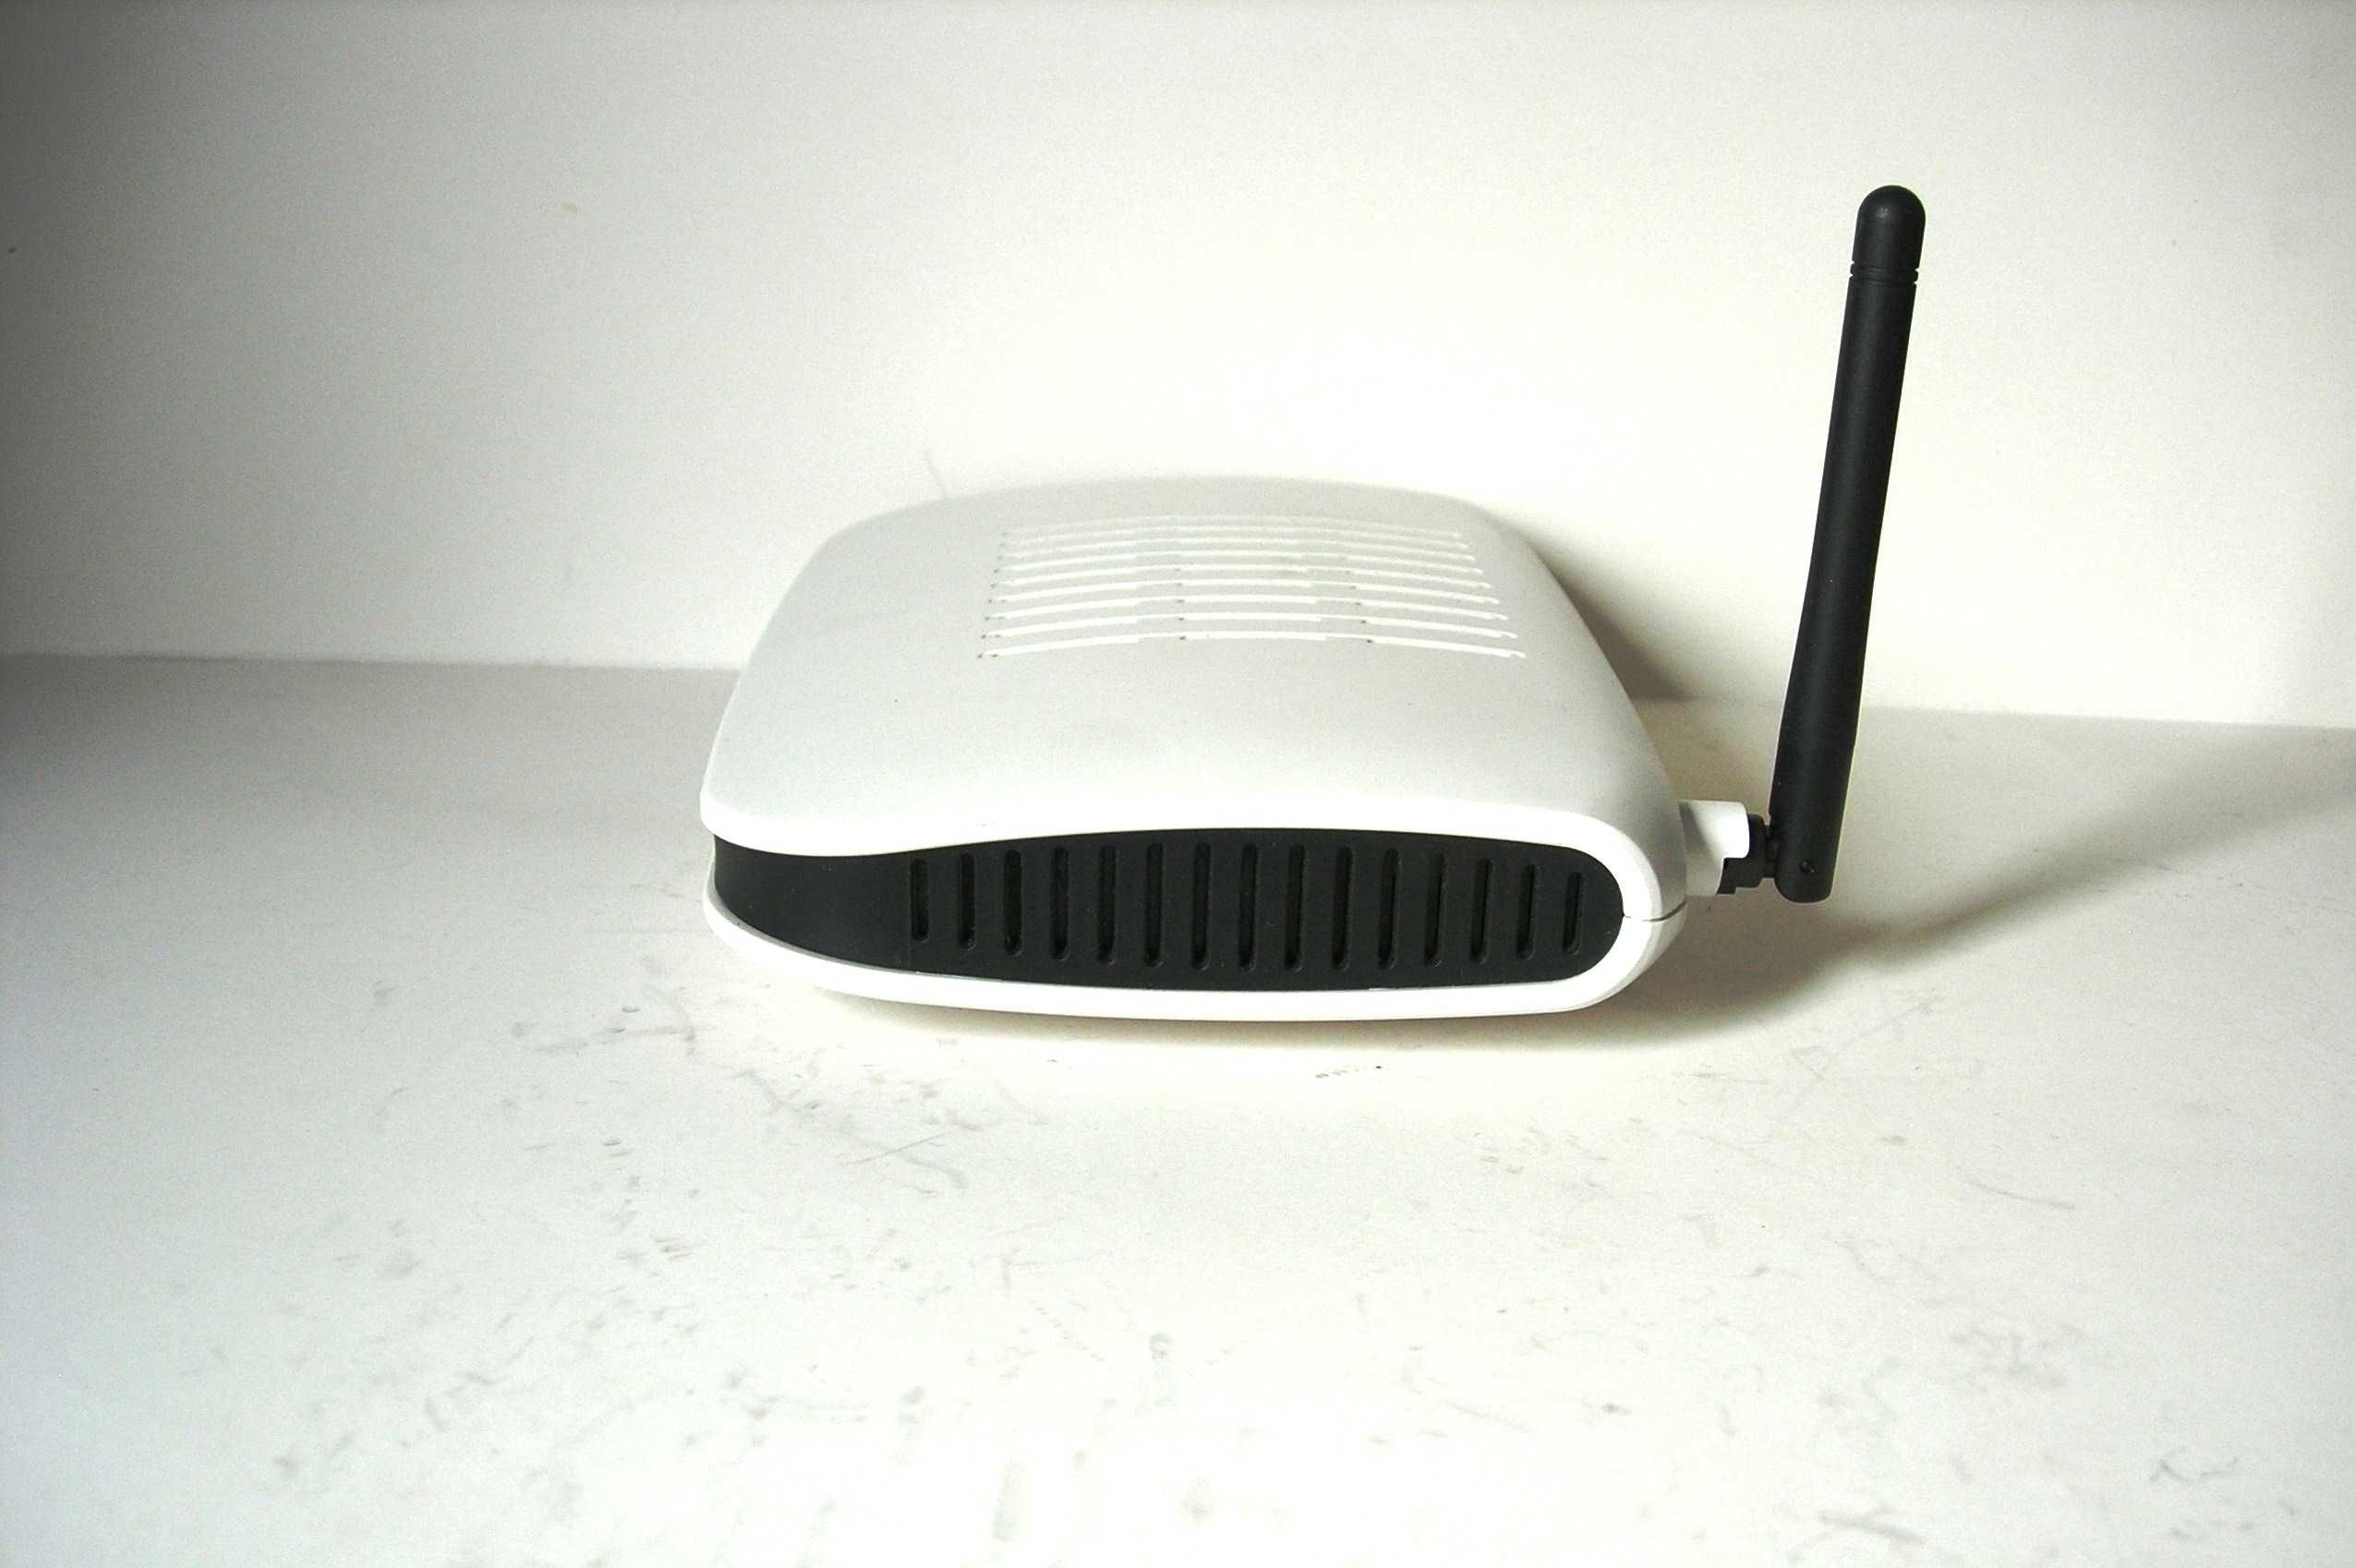 Router modem Cellpipe 1730 WiFi z zasilaczem stan bdb+